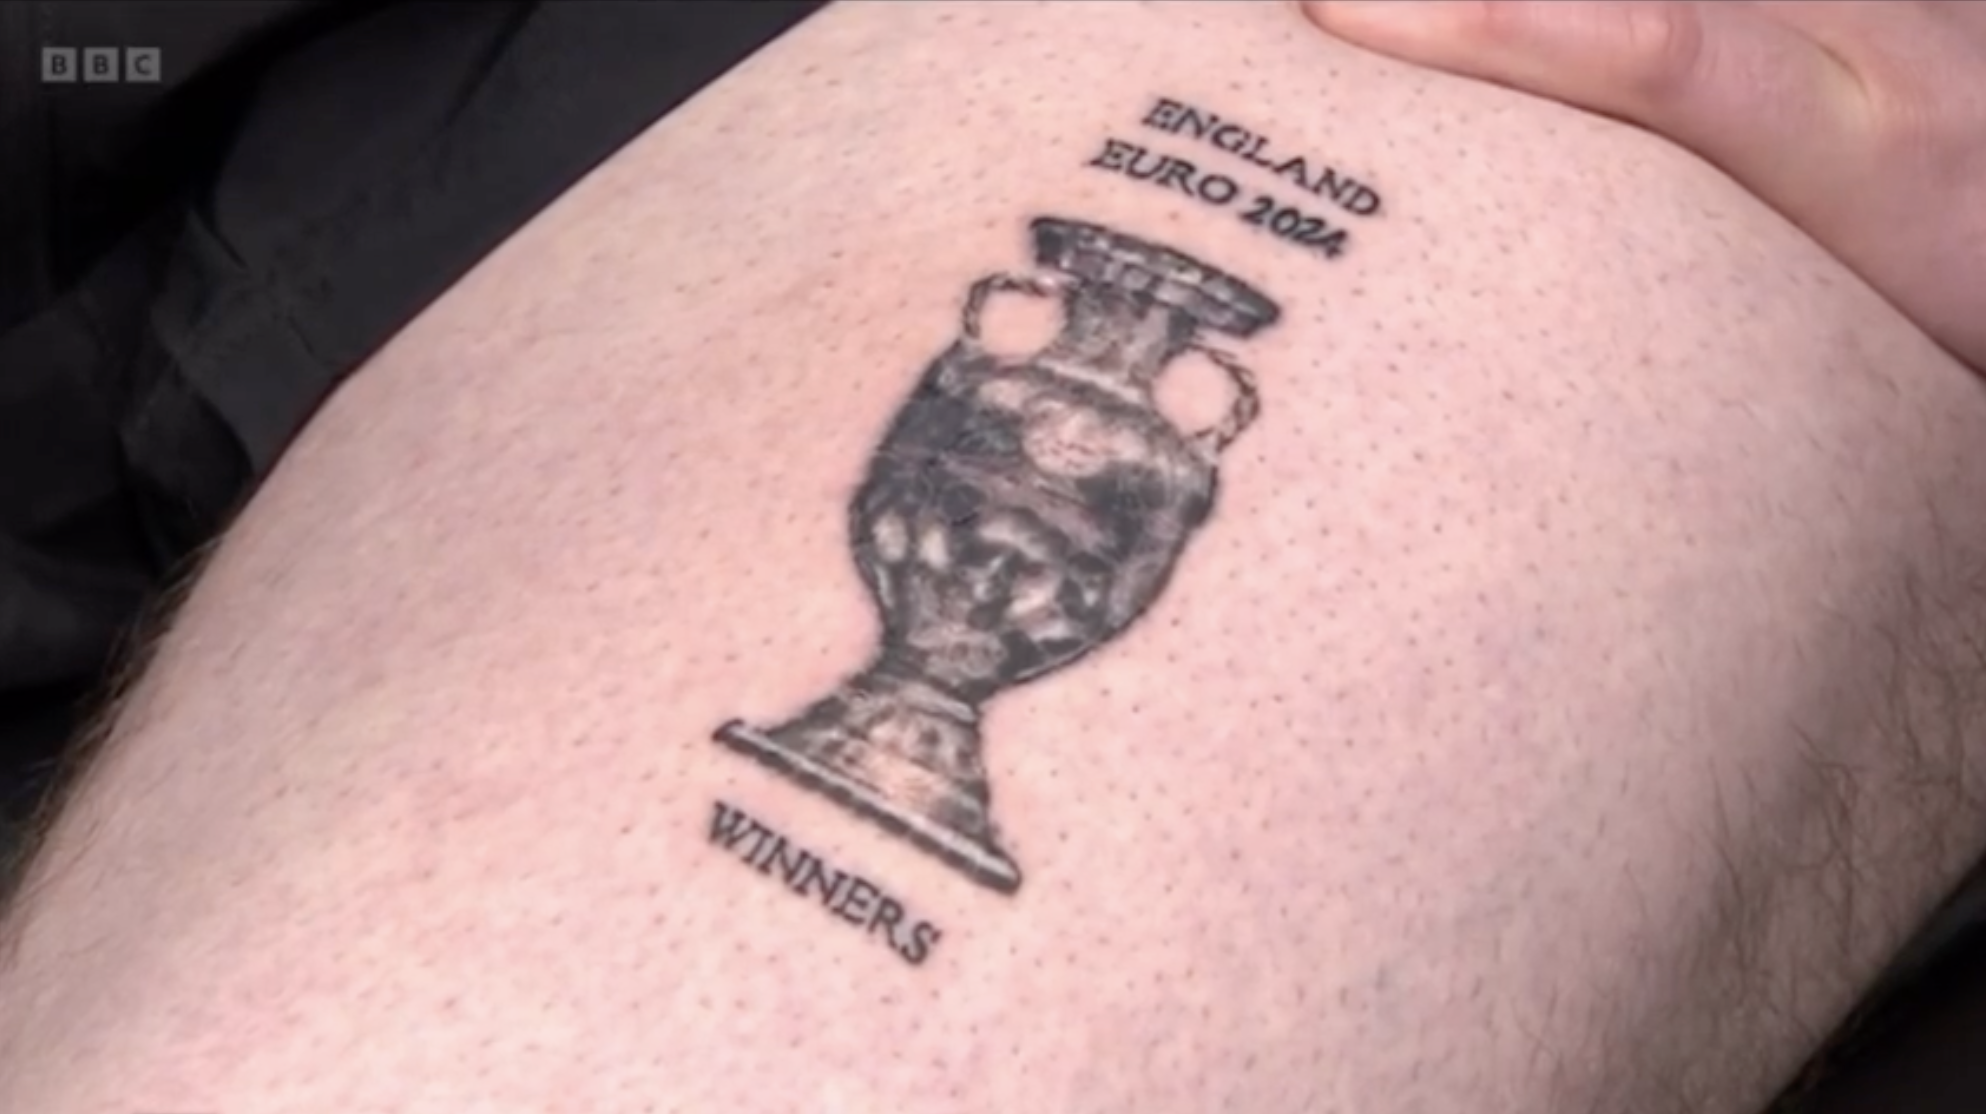 Nem bánta meg az angol drukker, aki előre magára tetováltatta, hogy Anglia az Európa-bajnok, mert legközelebb már tutira ők nyerik